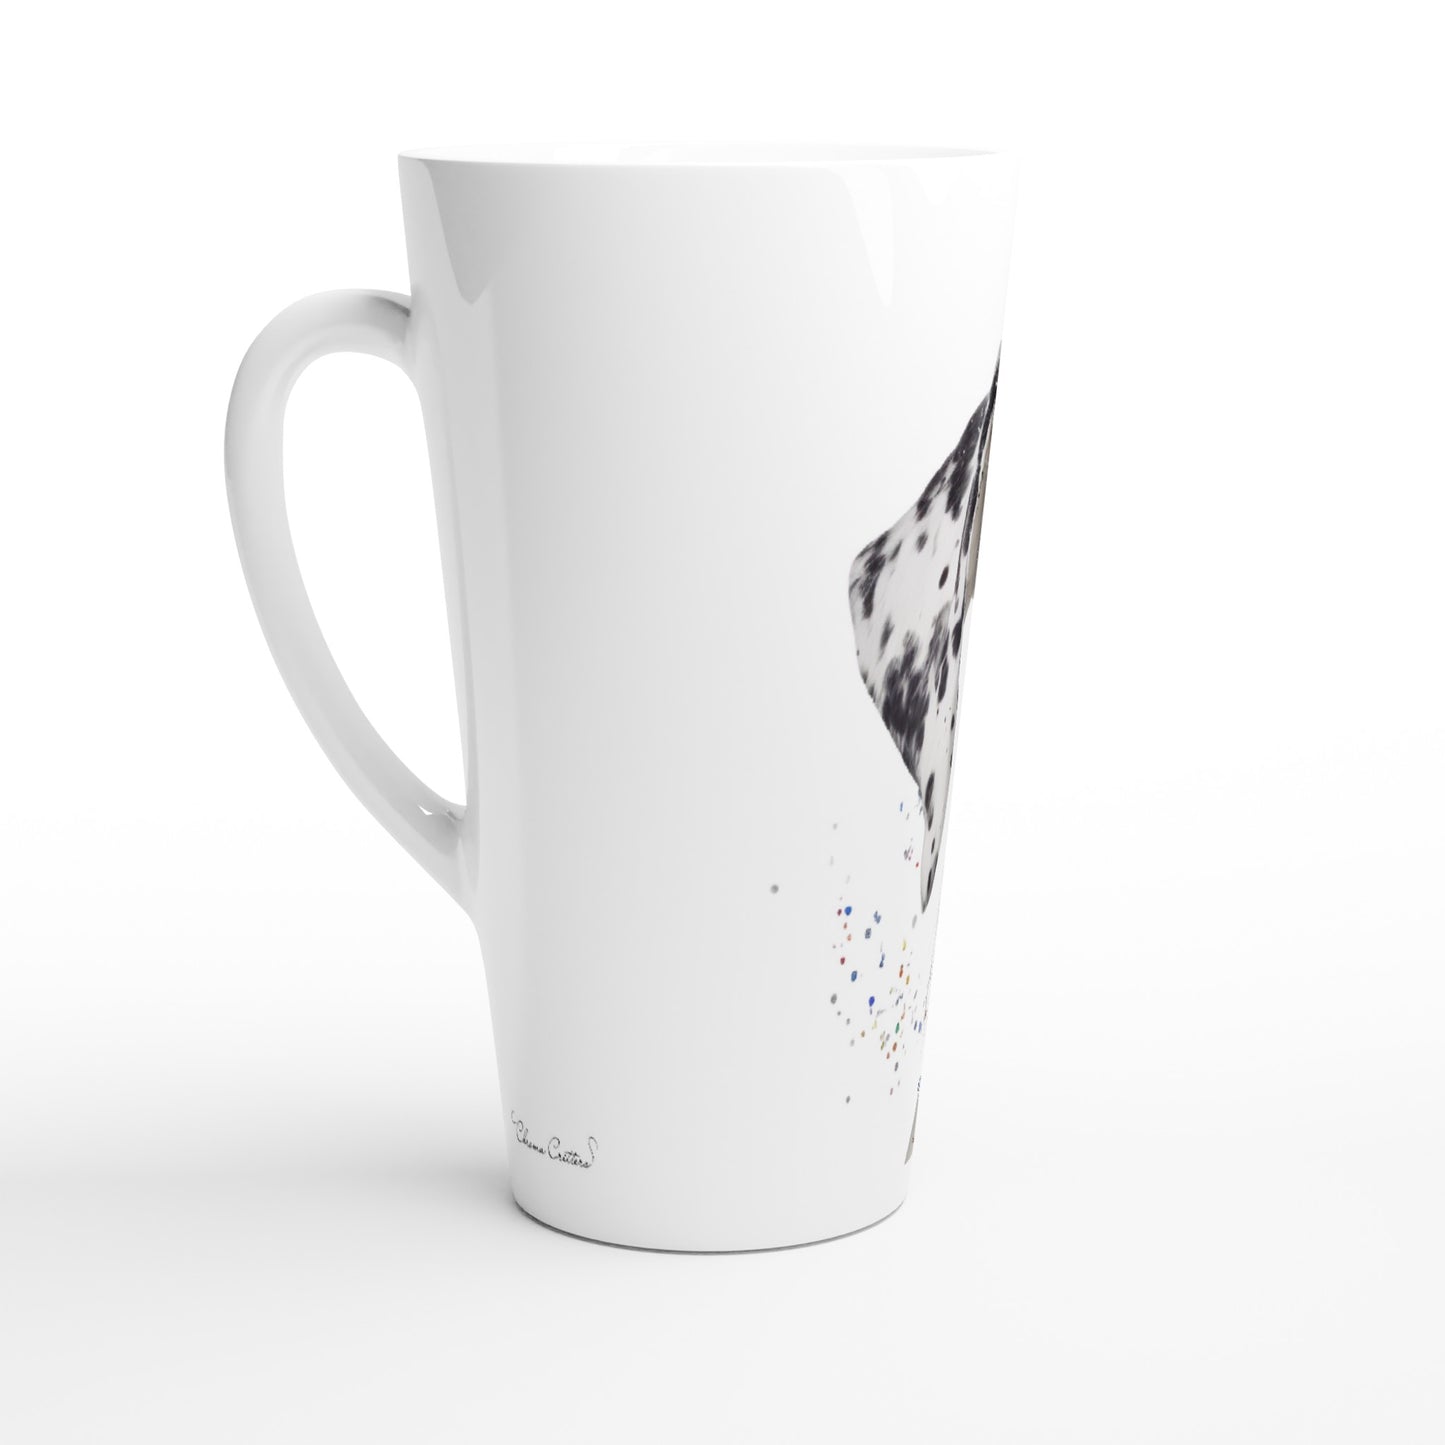 White Great Dane 17oz Ceramic Mug